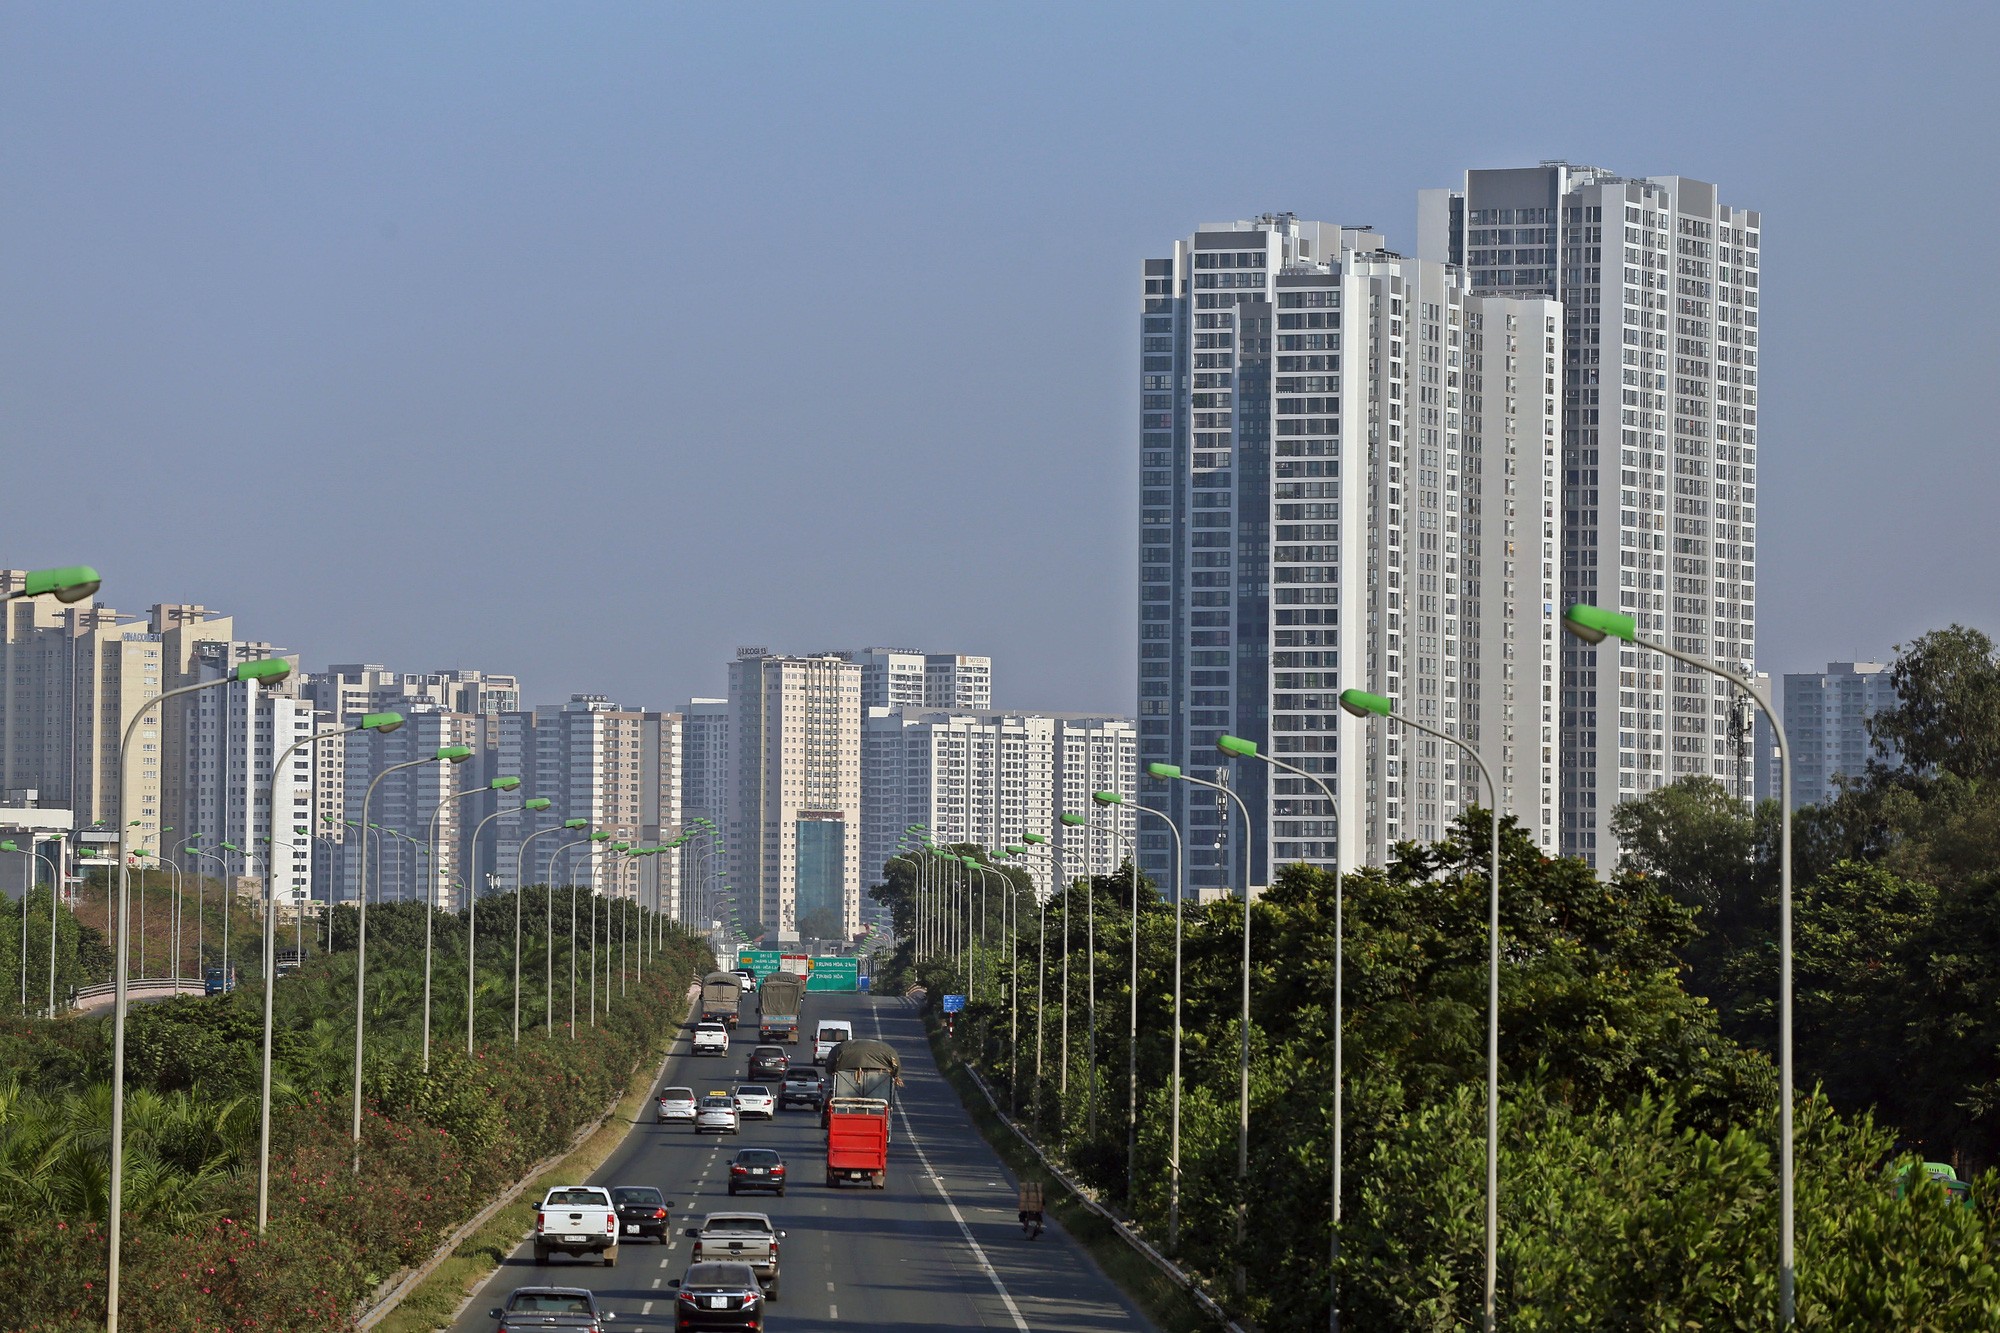 
Tuyến đường Đại lộ Thăng Long đã, đang và sẽ tiếp tục nâng tầm bất động sản Quốc Oai.&nbsp;
